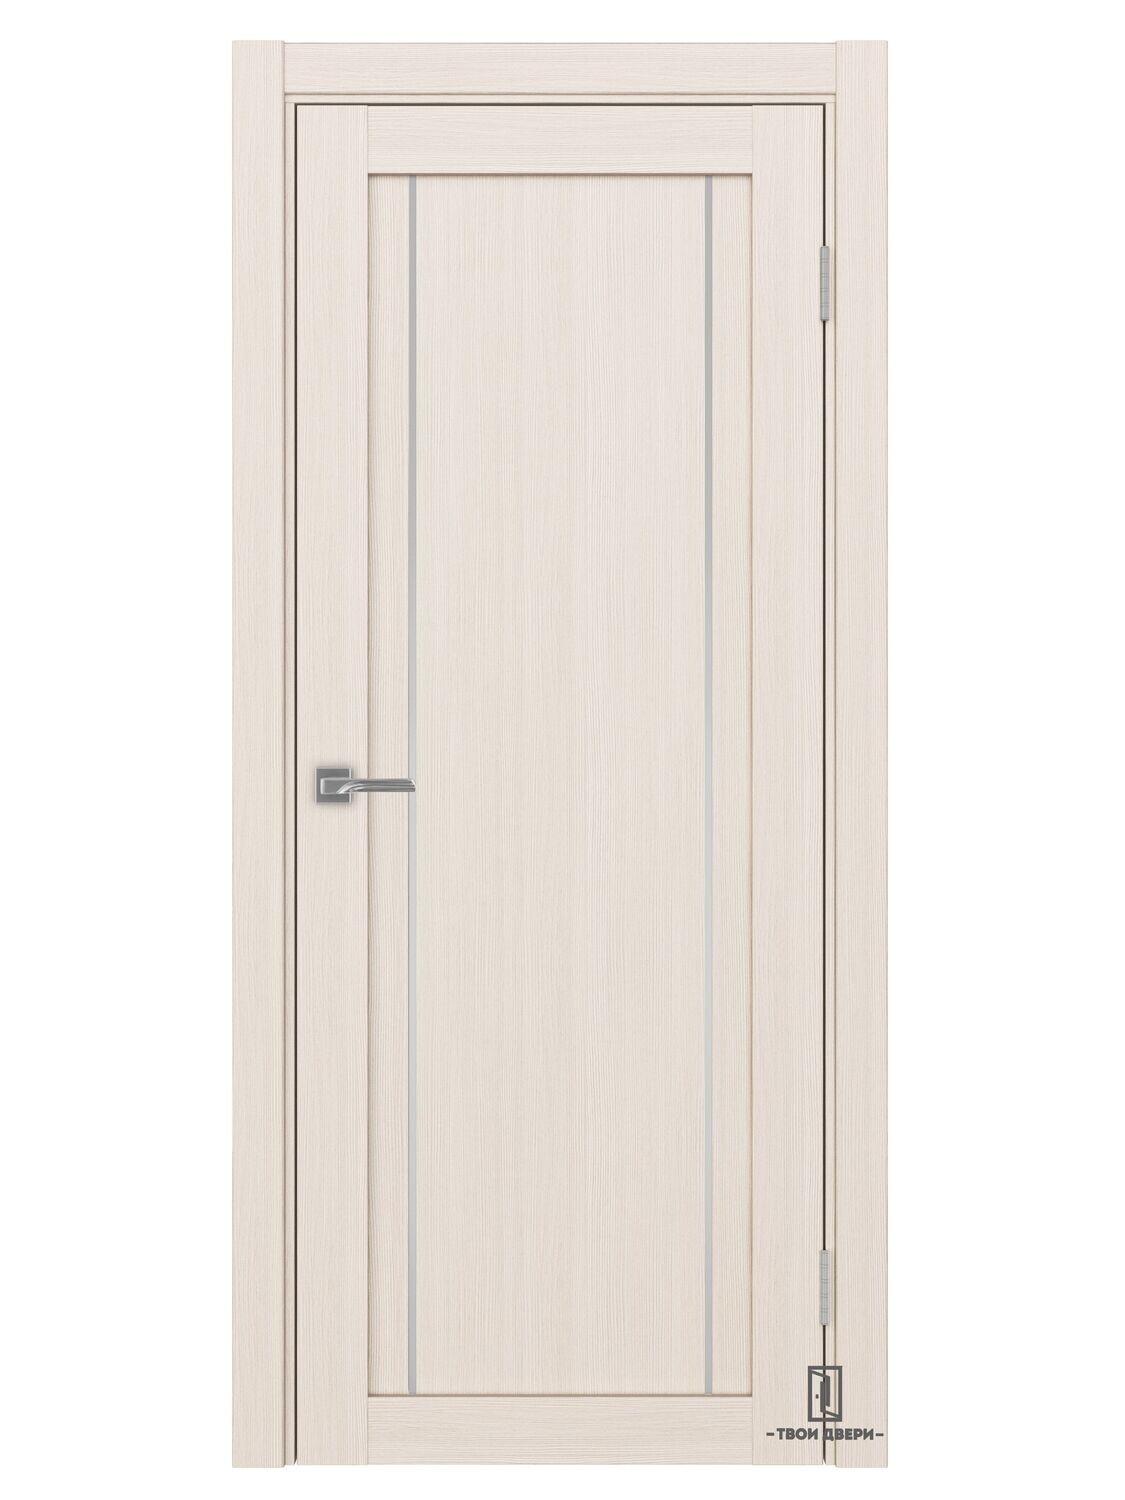 Дверь межкомнатная АПП 522.111 (молдинги), ясень перламутровый